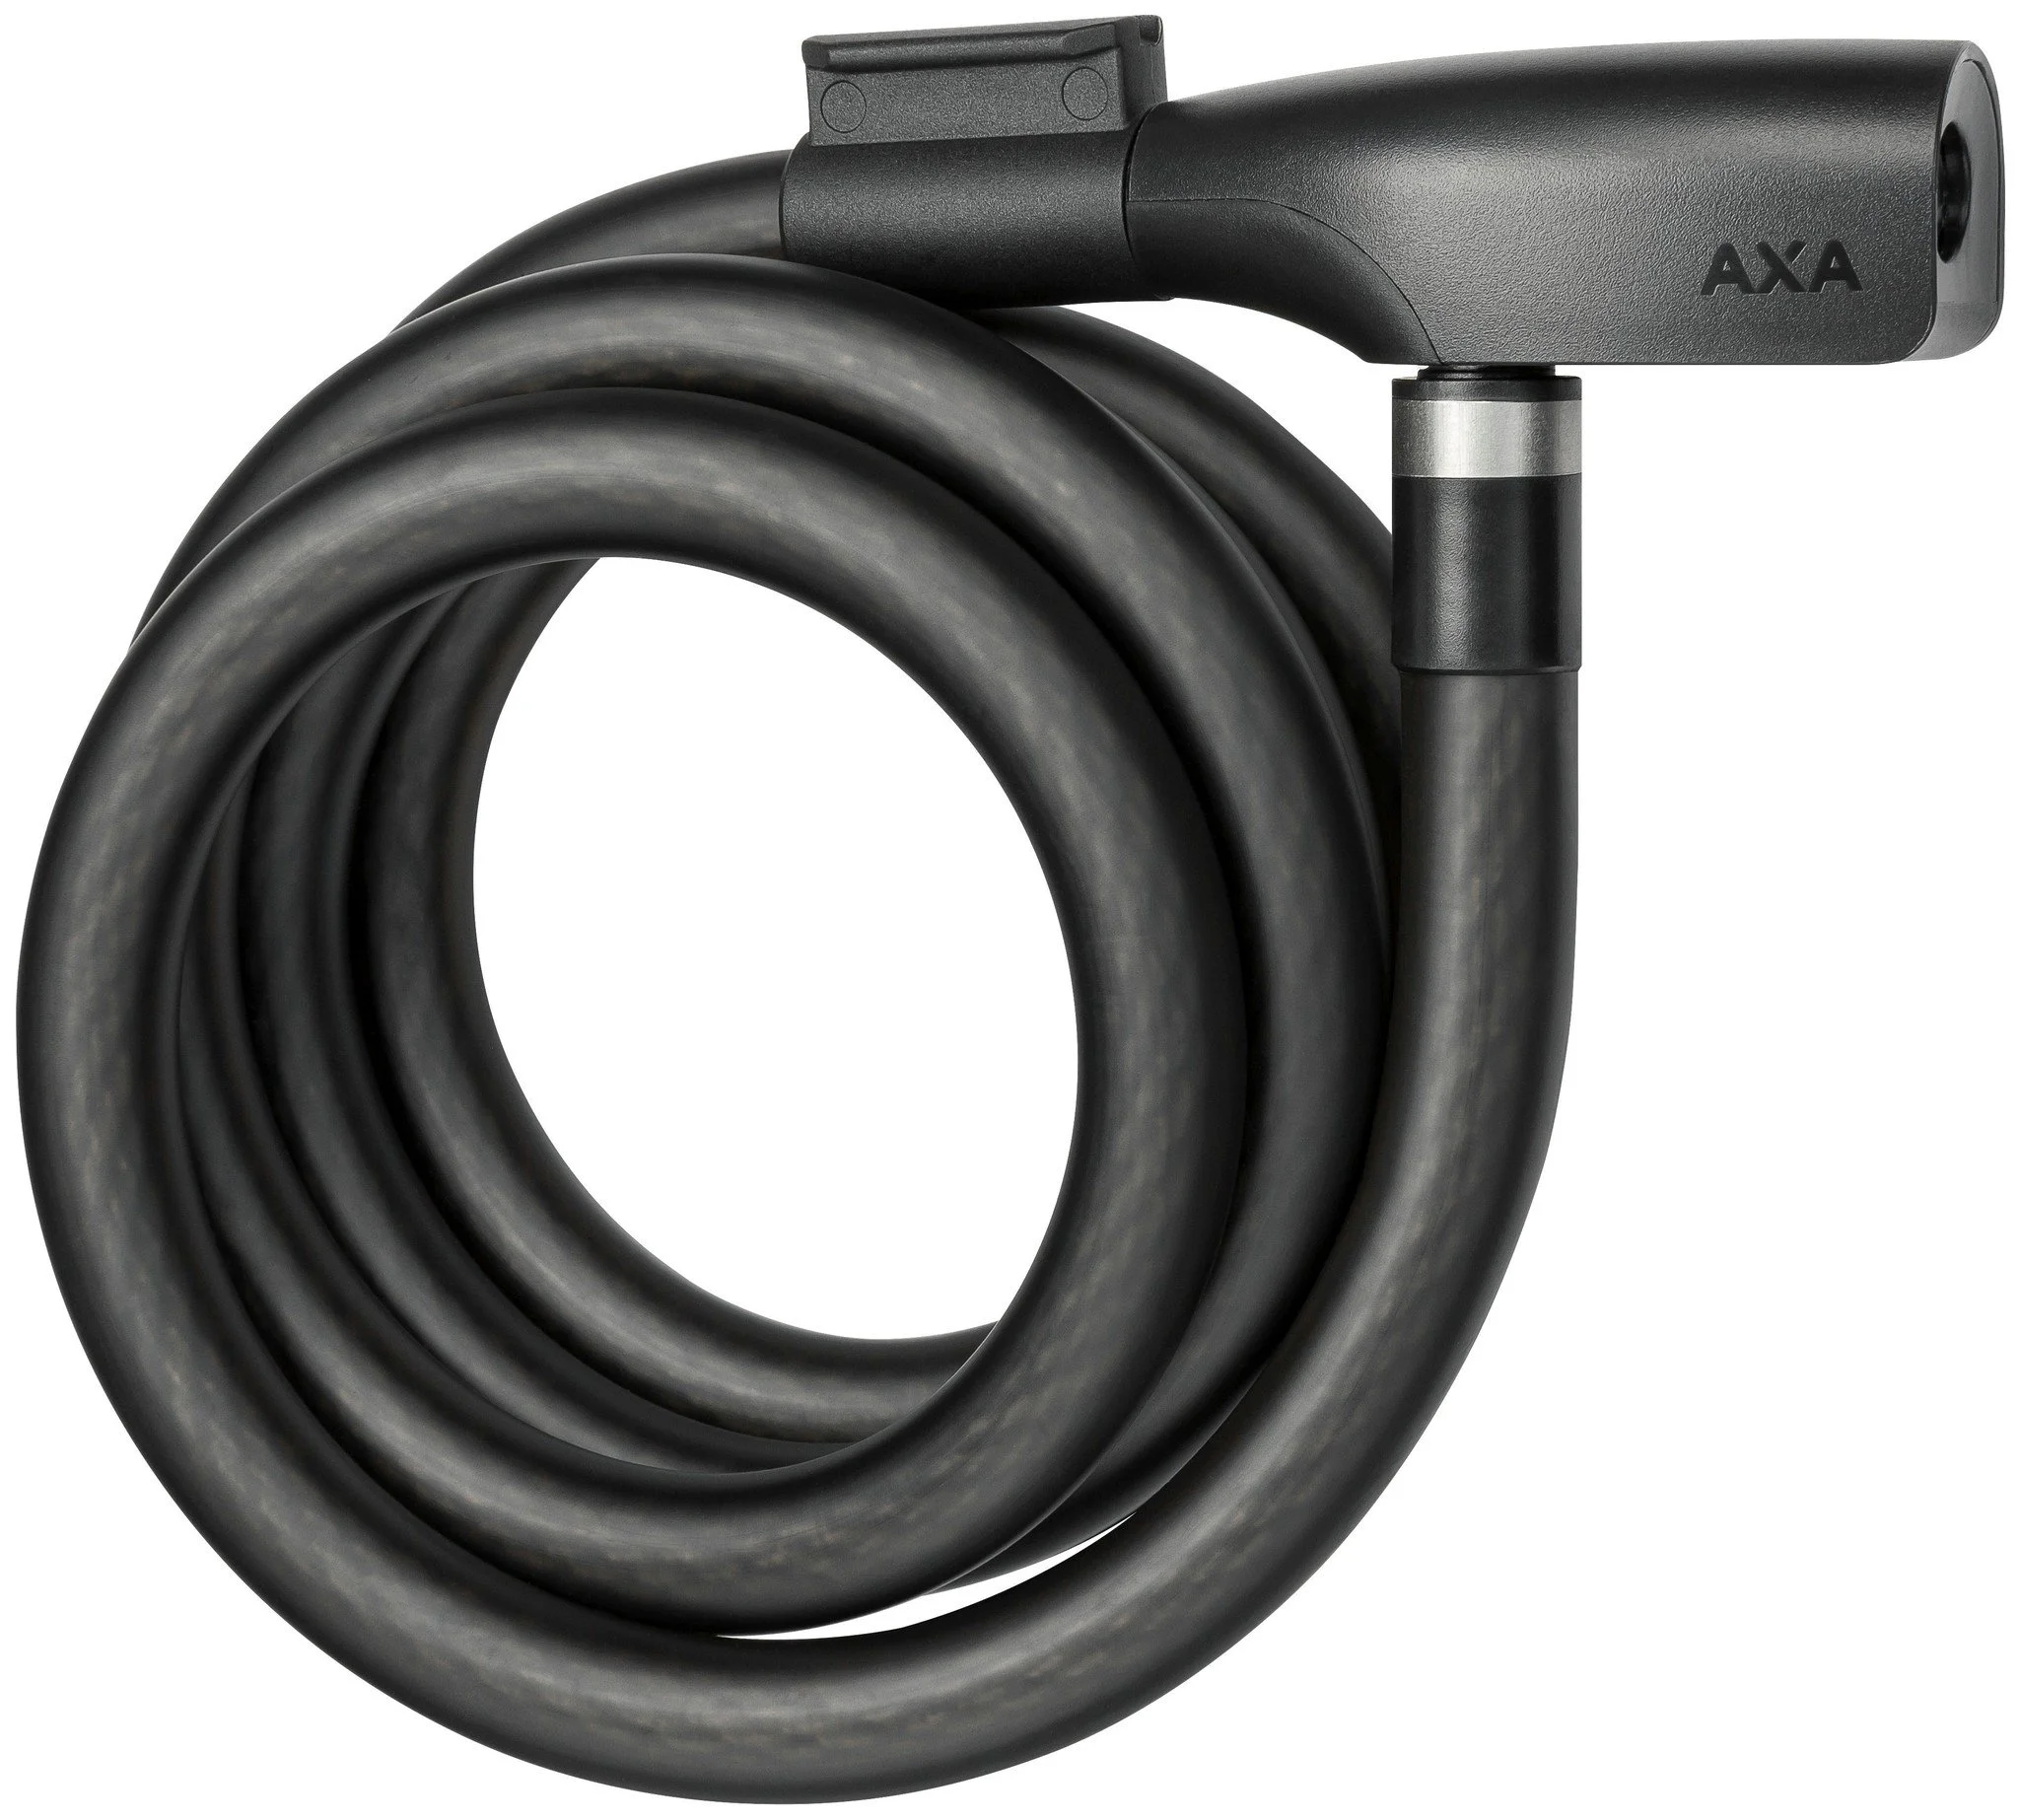 AXA kabelslot Resolute 15 180 Ø15-1800 mm zwart